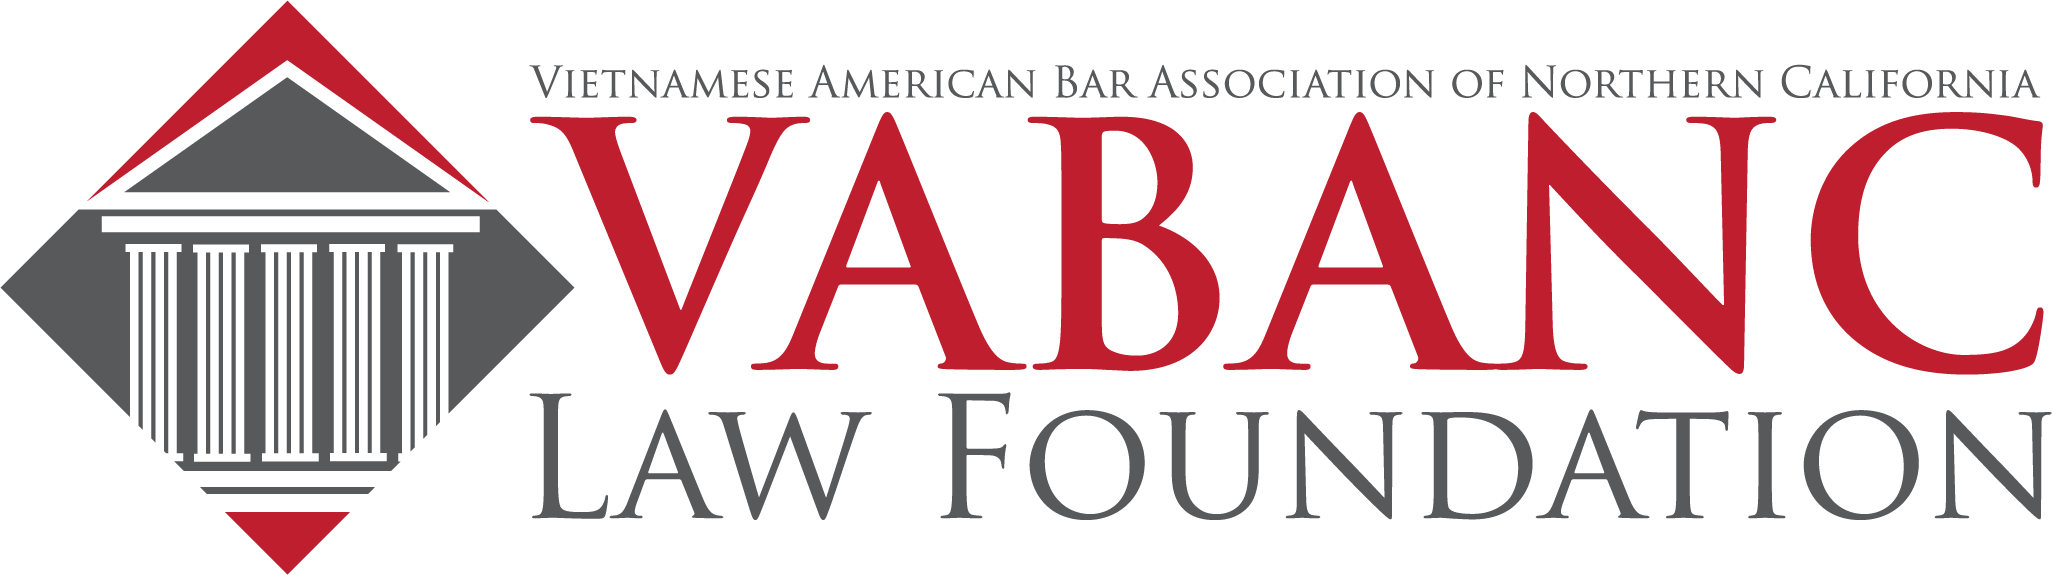 VABANC Law Foundation